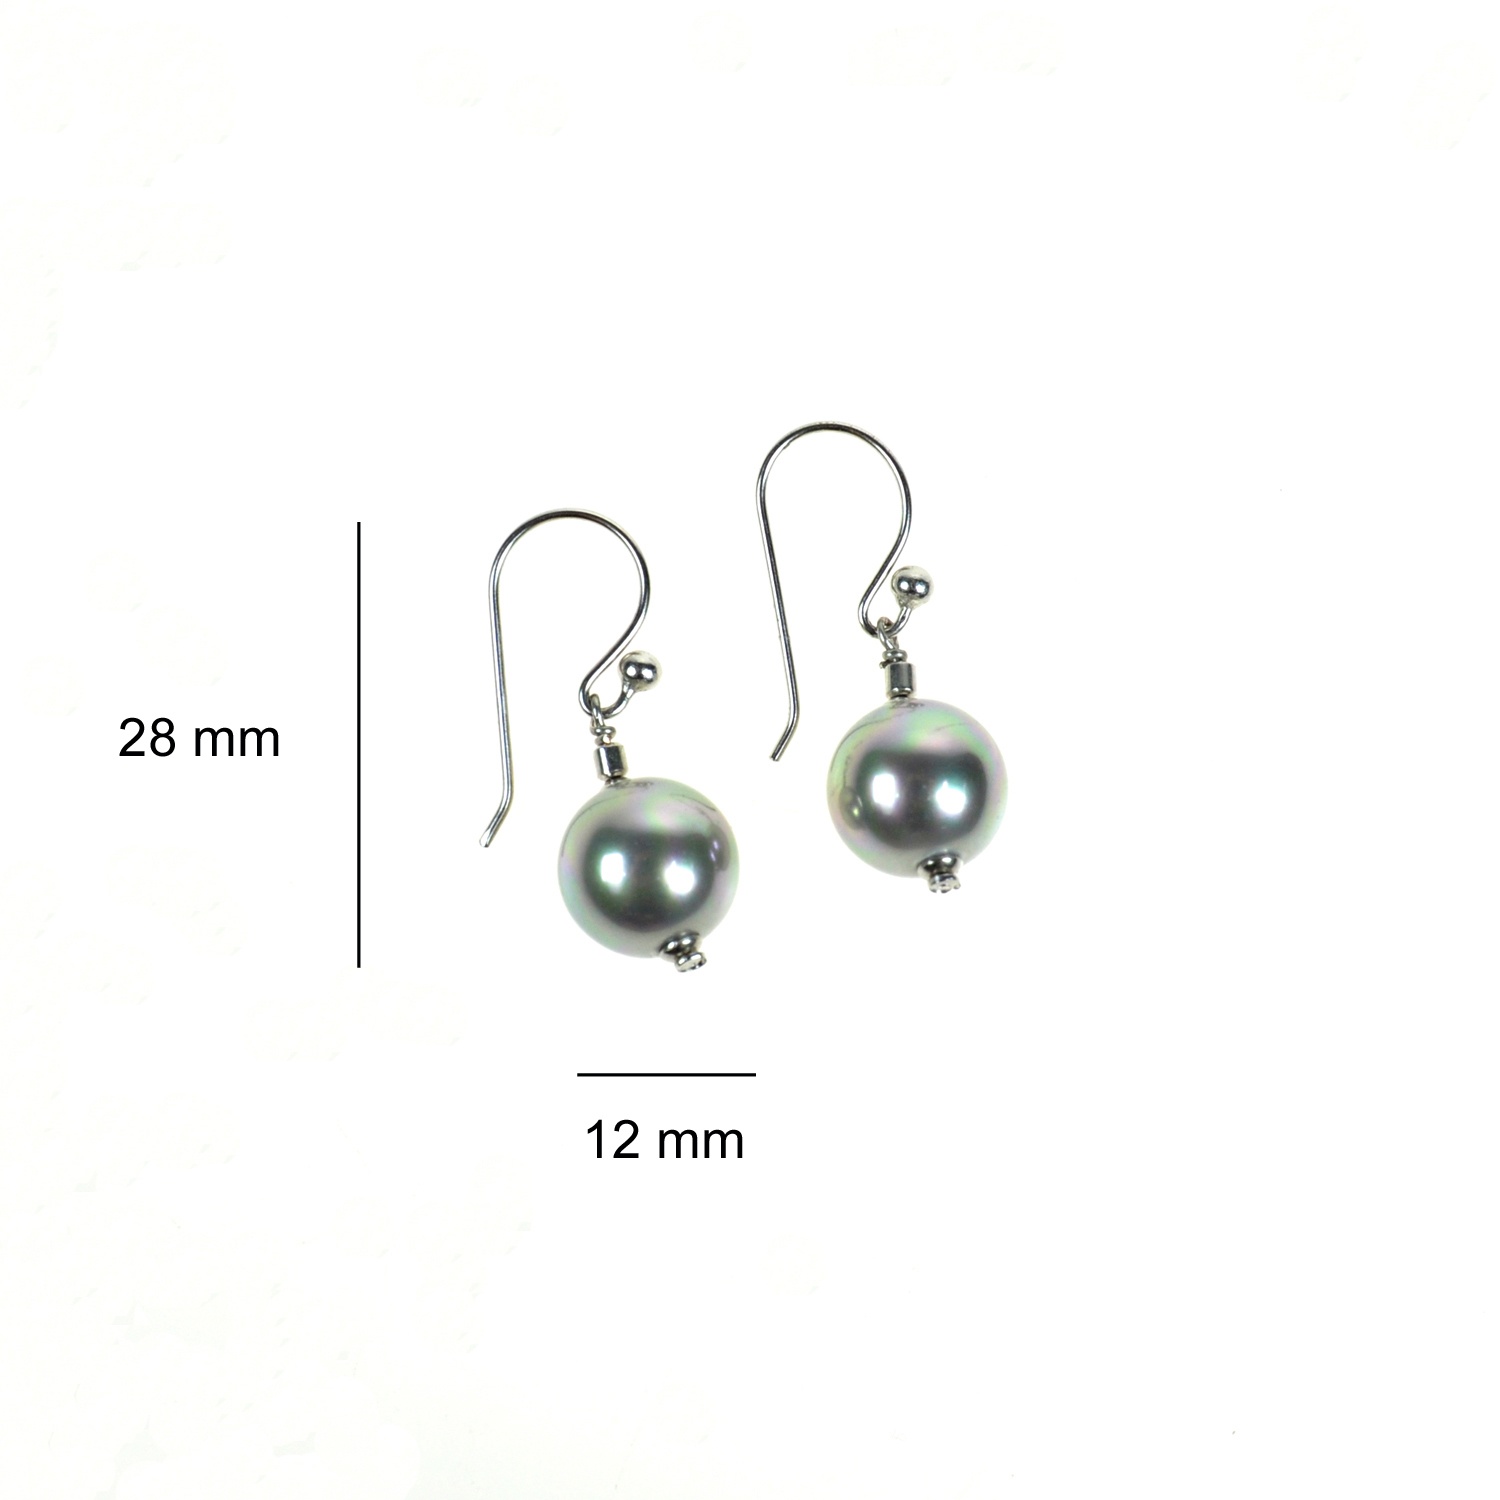 Hook earrings with grey pearls 3